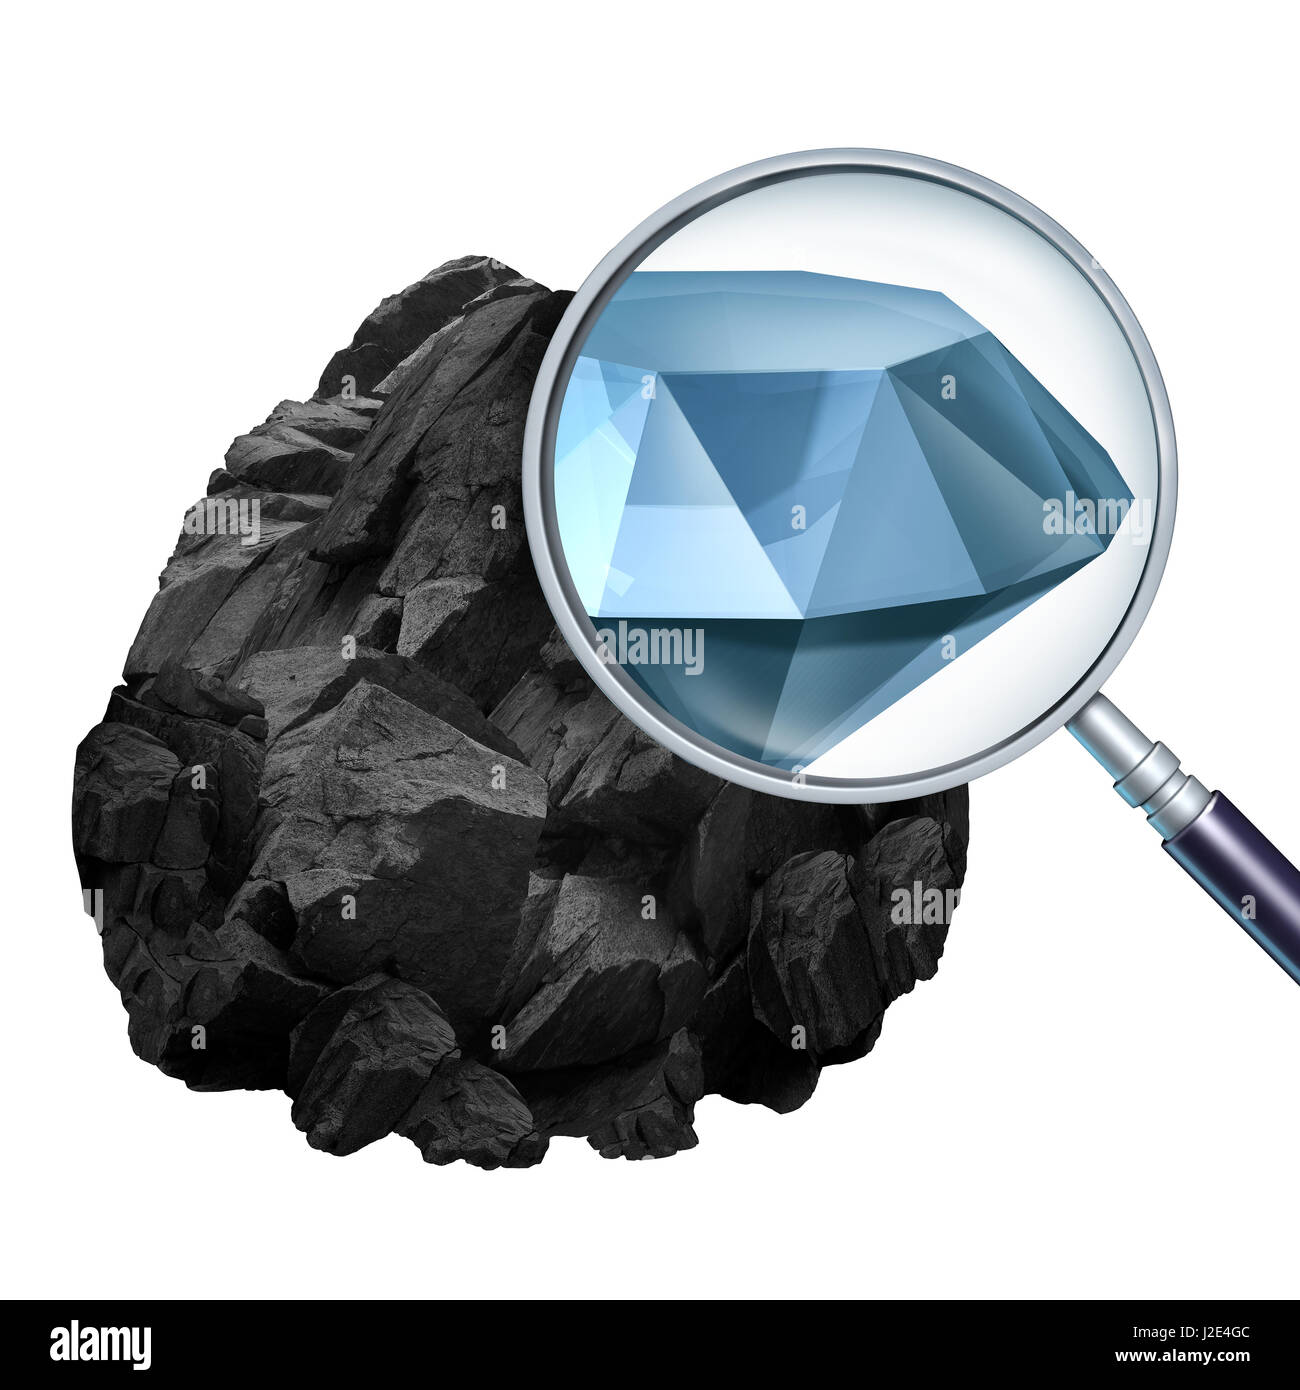 La búsqueda de valor y descubrir o encontrar valiosa oportunidad como una lupa examinando una roca y revelando un costoso diamante. Foto de stock